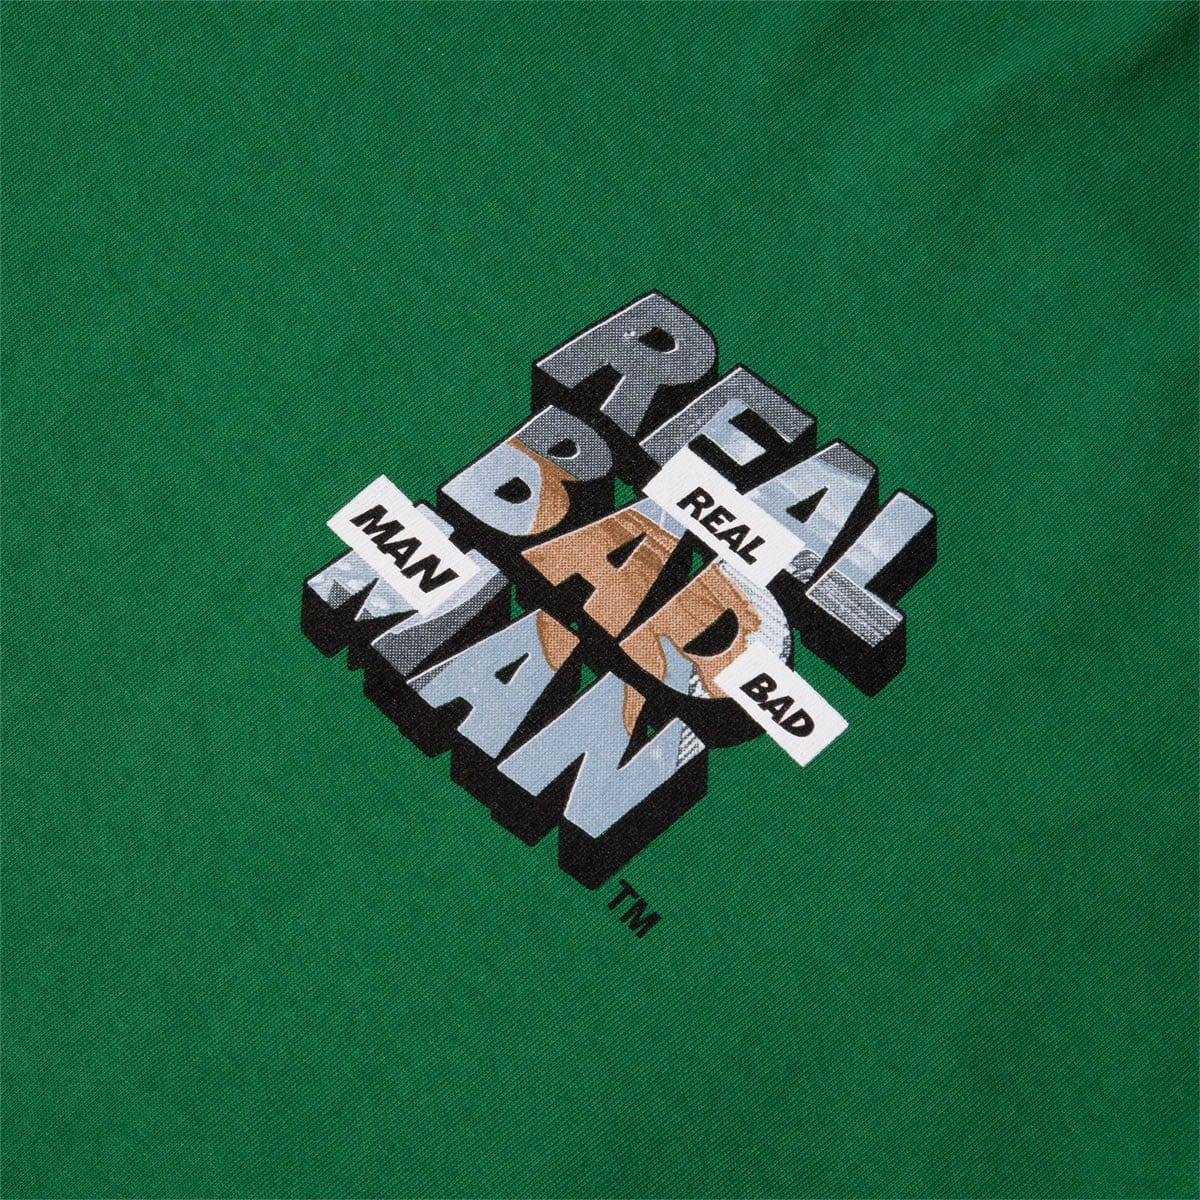 Real Bad Man T-Shirts PIANO MAN L/S TEE